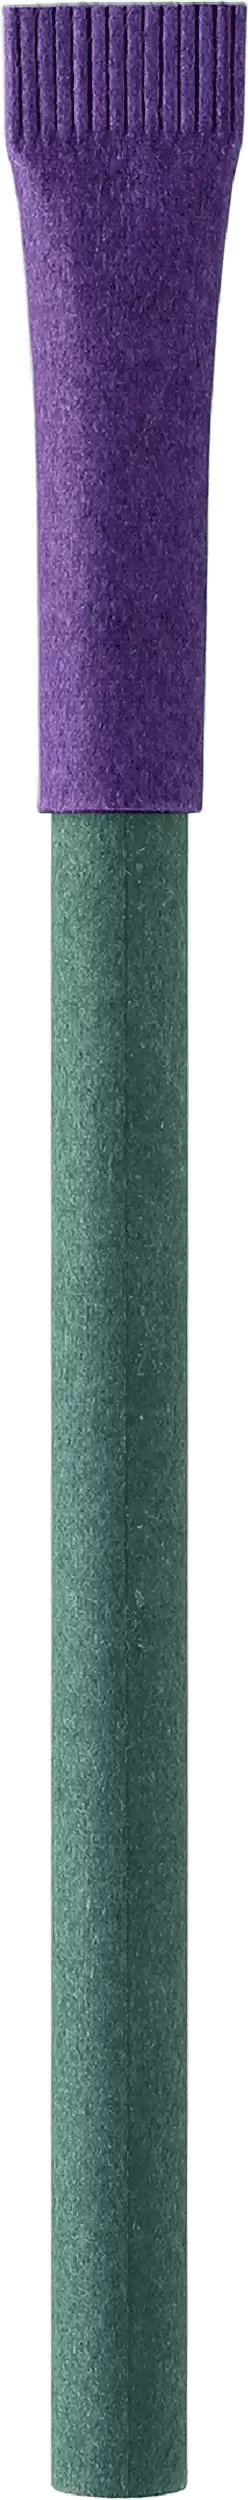 Ручка KRAFT MIX Зеленая с фиолетовым 3011-02-11